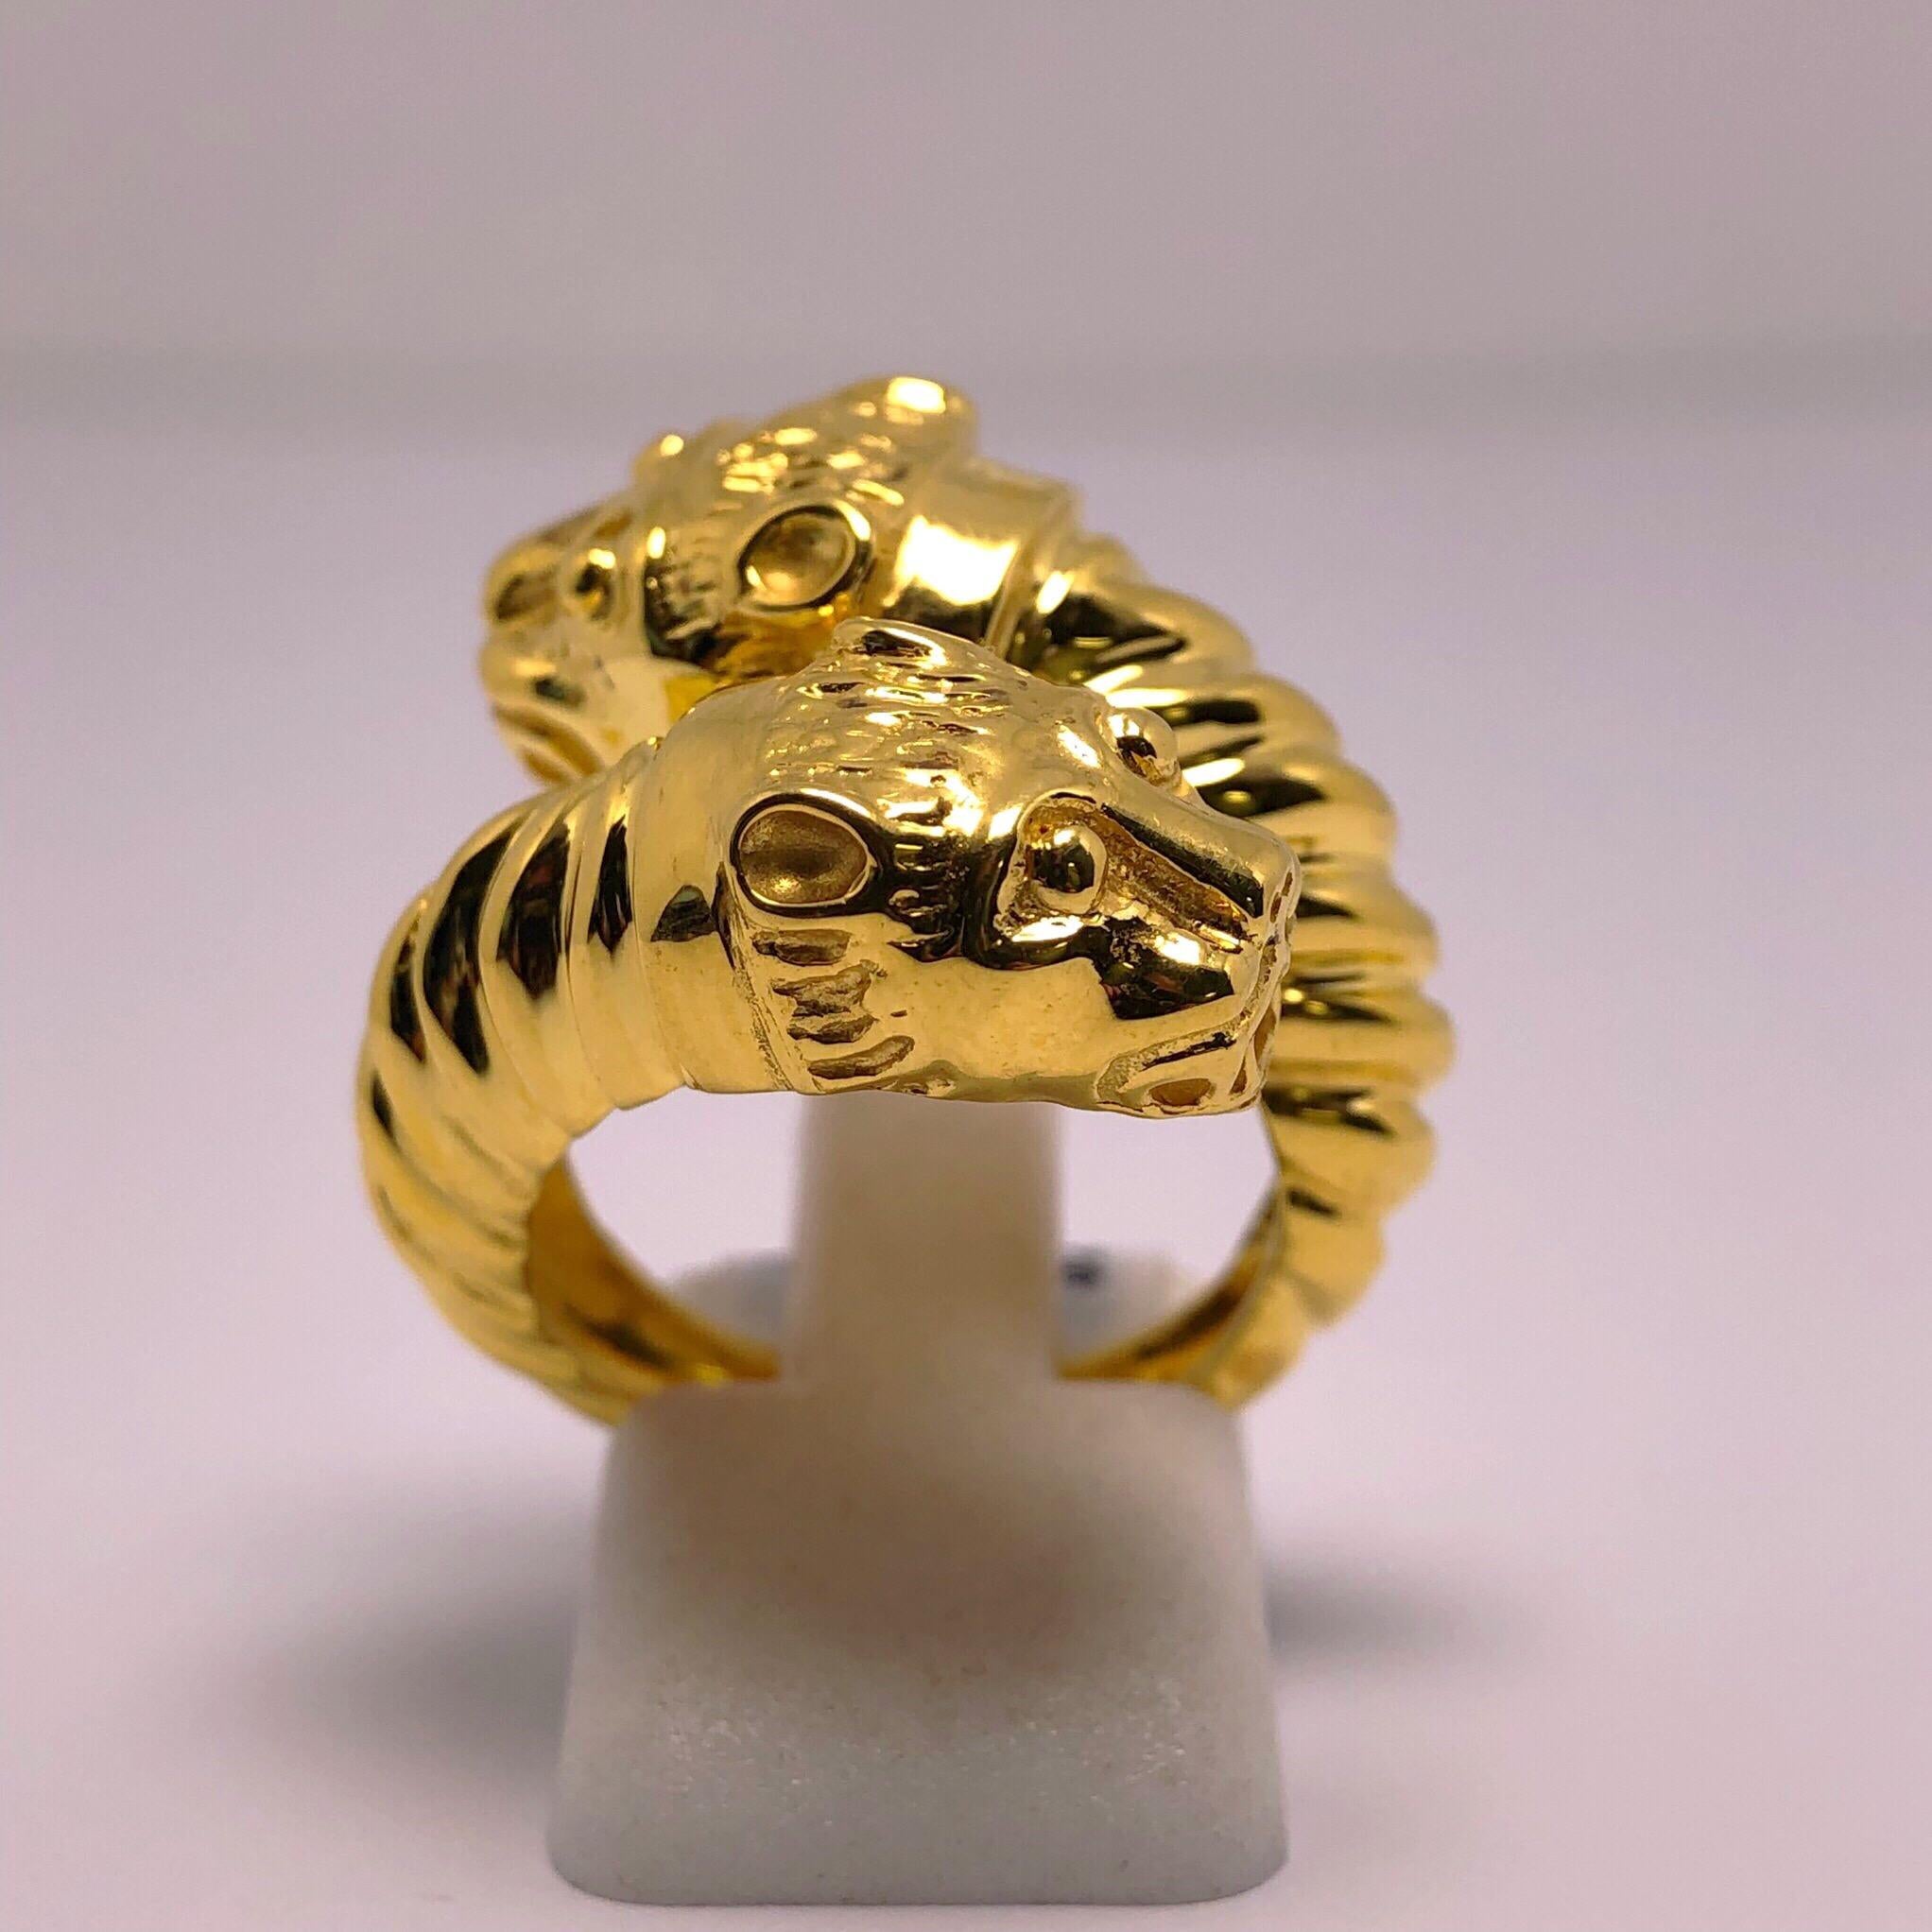 Dieser wunderschön detaillierte Ring wurde von Zolotas aus Athen:: Griechenland:: entworfen. Das 1895 gegründete Unternehmen verbindet griechisches Erbe mit modernem Stil:: um diese zeitlosen Stücke zu kreieren. Begehrt von Royals und